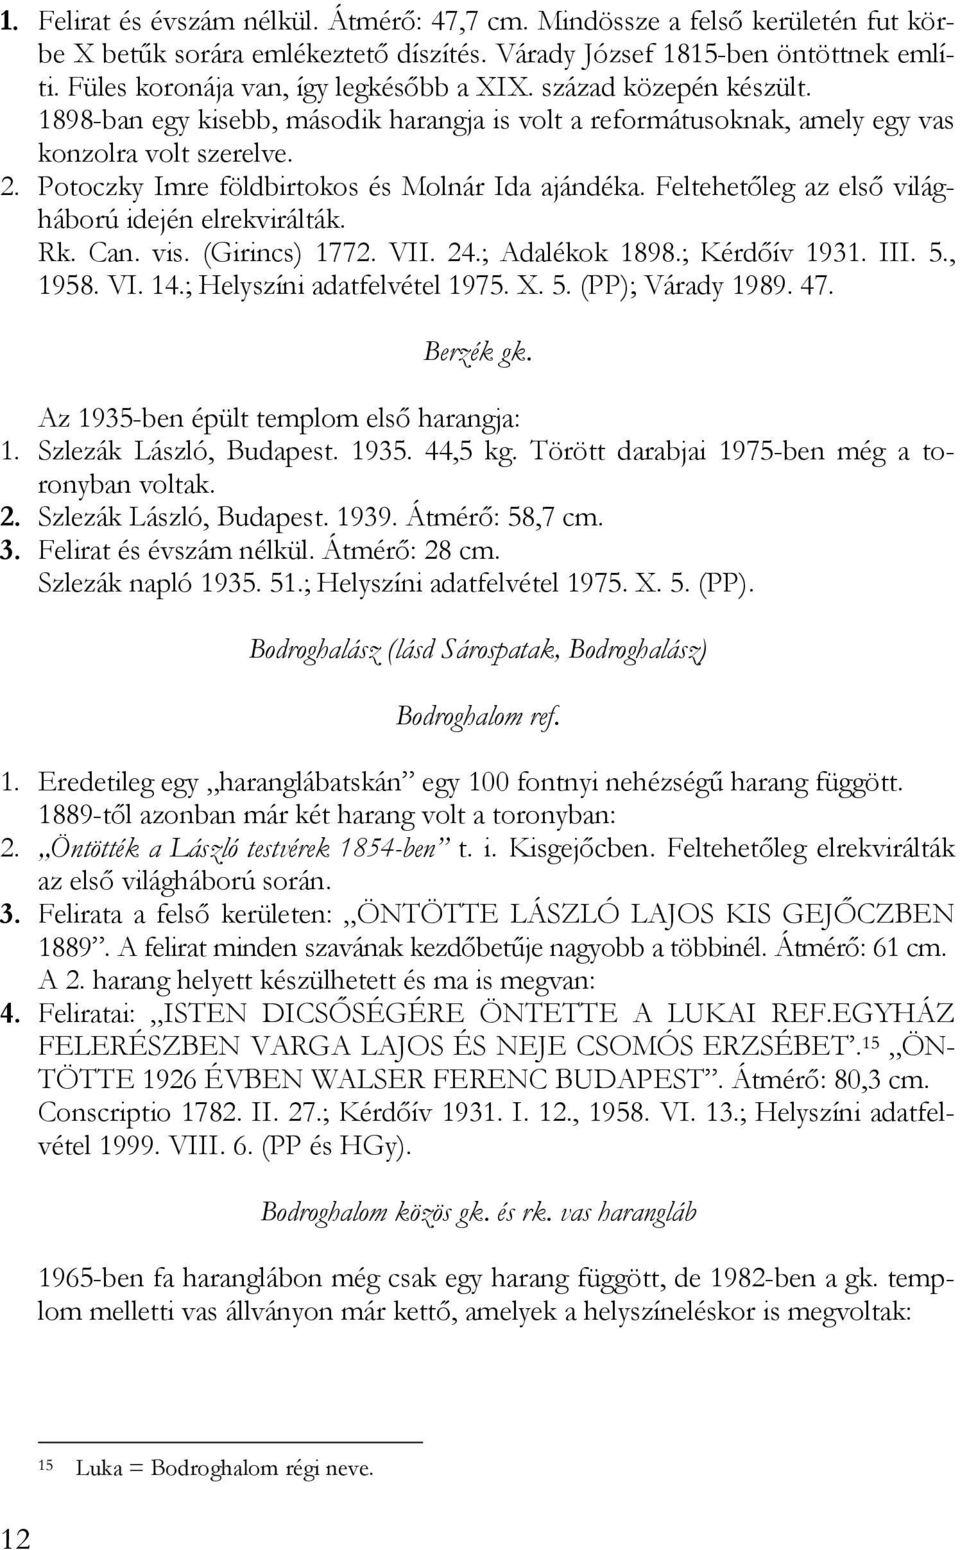 Potoczky Imre földbirtokos és Molnár Ida ajándéka. Feltehetőleg az első világháború idején elrekvirálták. Rk. Can. vis. (Girincs) 1772. VII. 24.; Adalékok 1898.; Kérdőív 1931. III. 5., 1958. VI. 14.